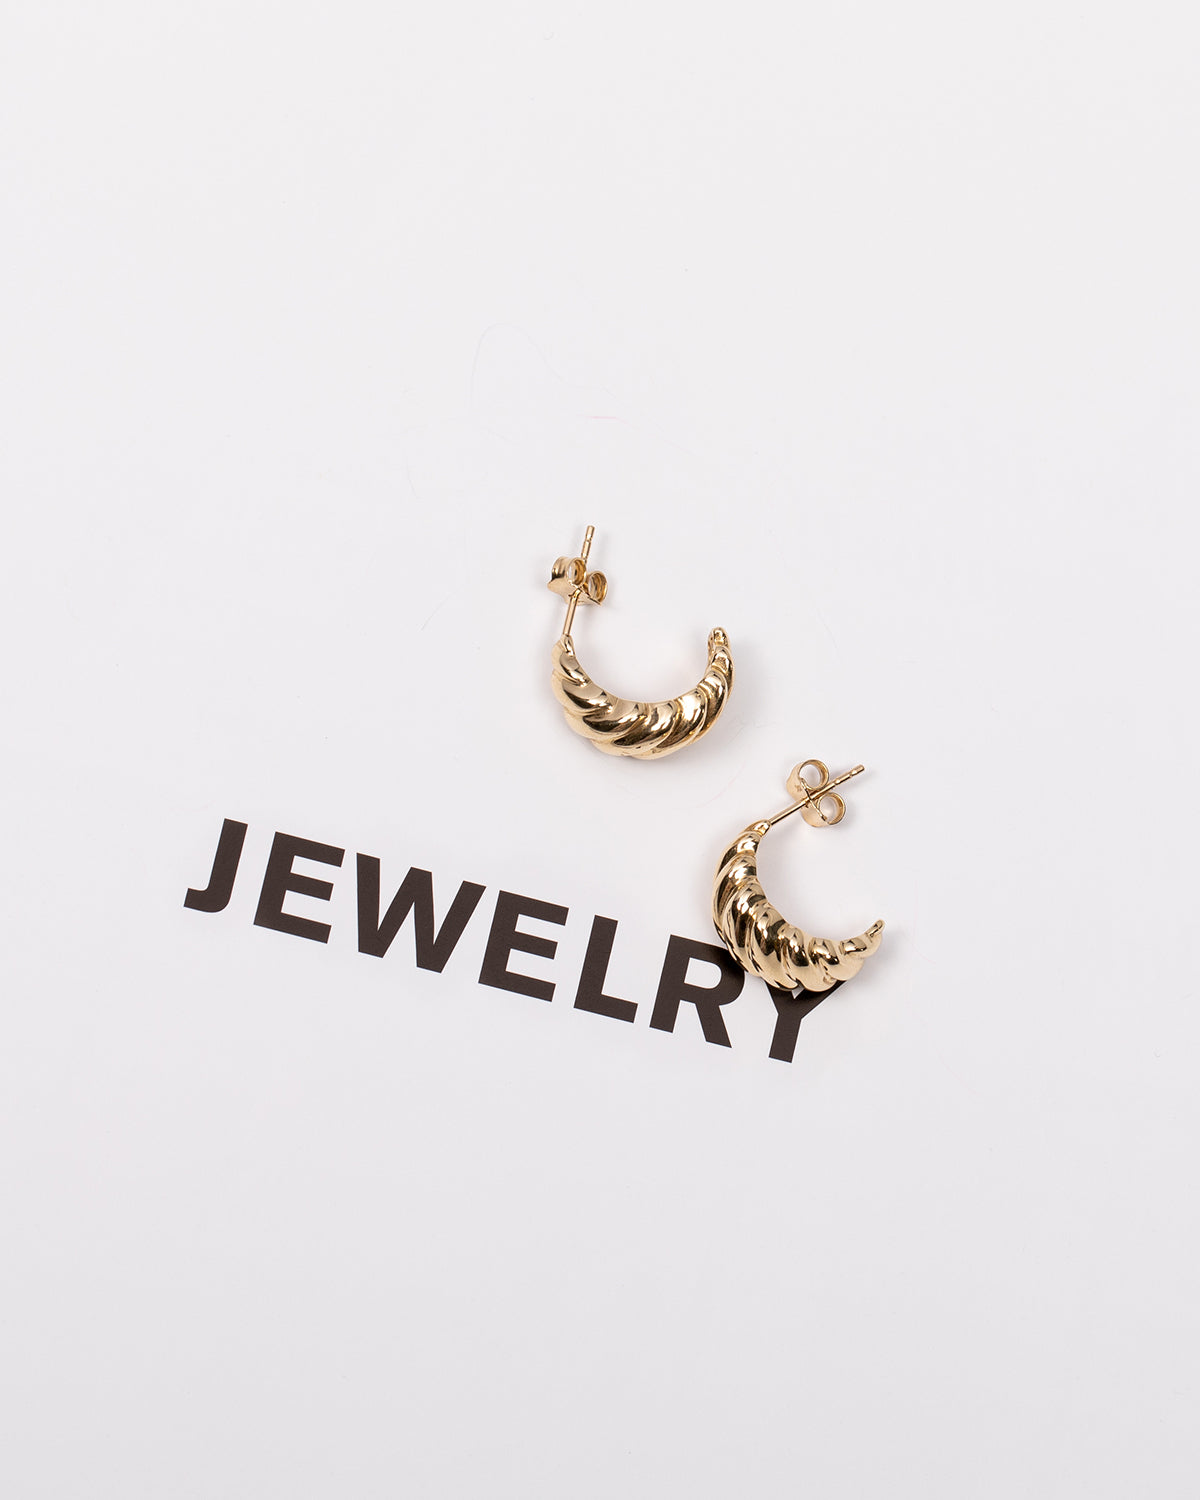 14k Gold Earring Backings - Zoe Lev Jewelry